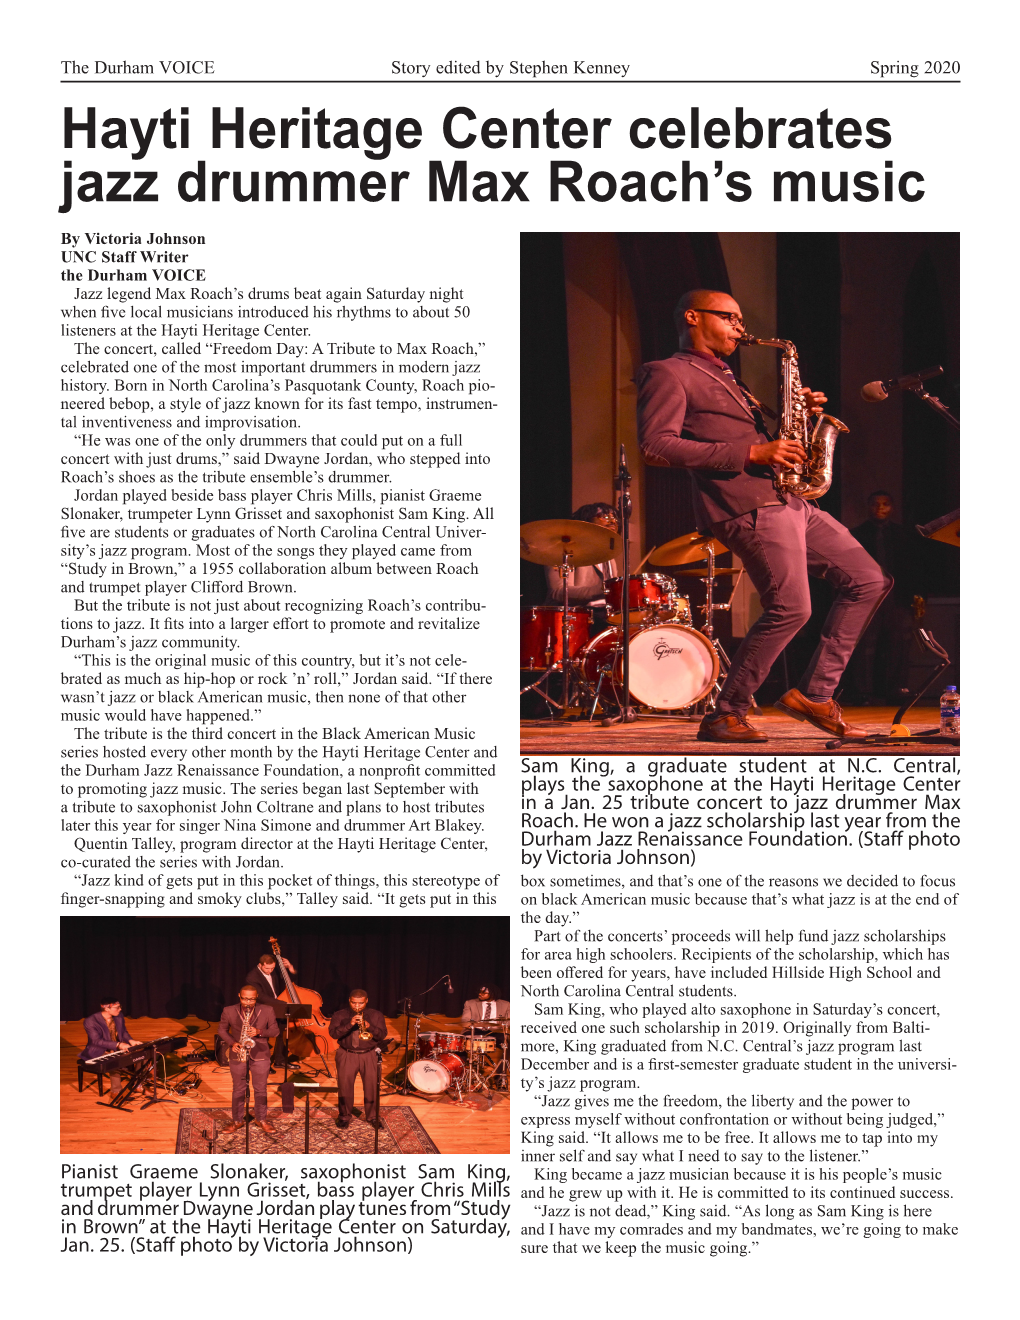 Hayti Heritage Center Celebrates Jazz Drummer Max Roach's Music